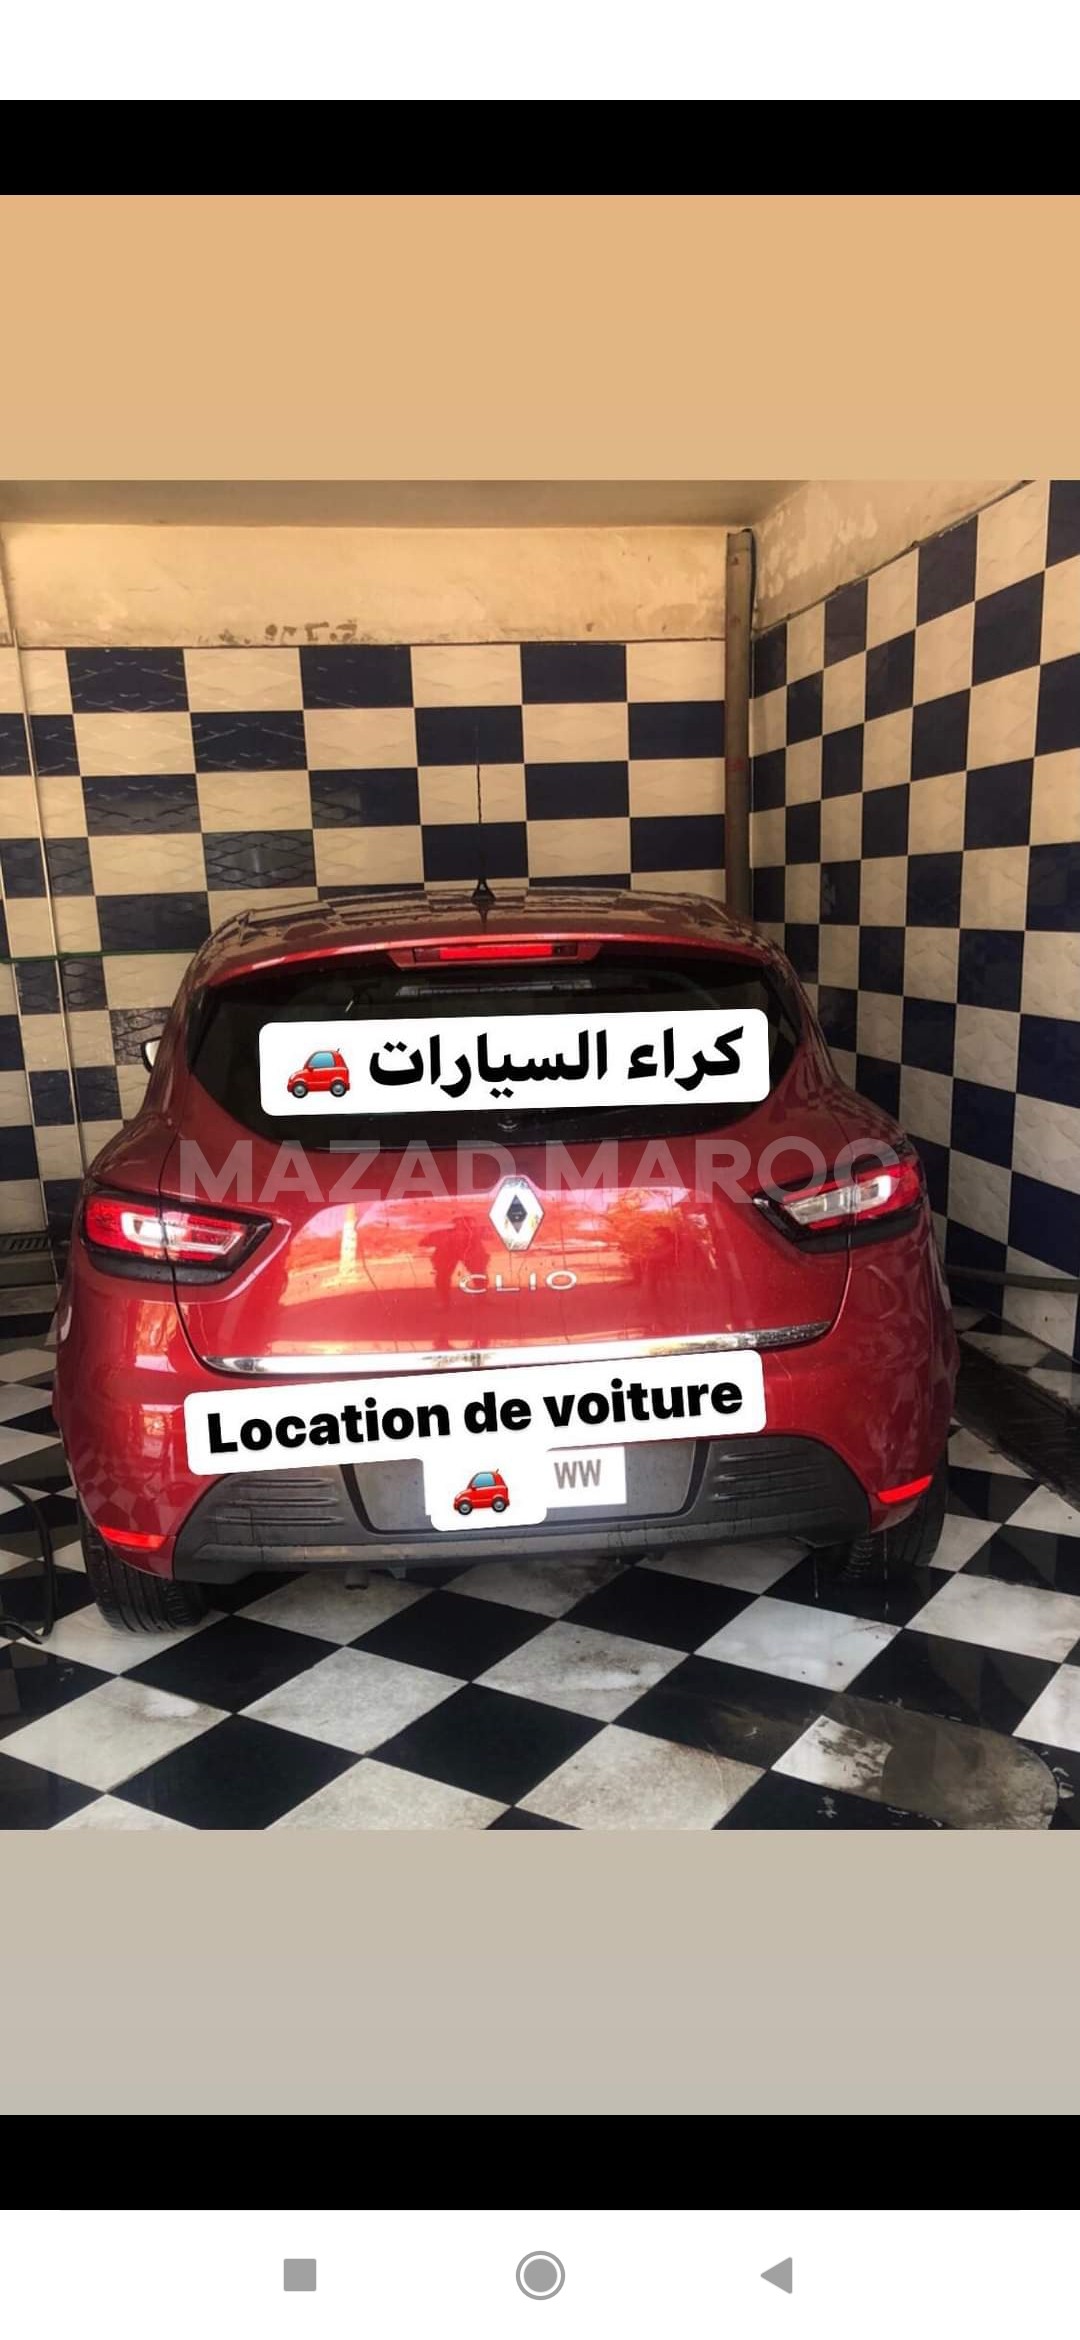 Location de voiture